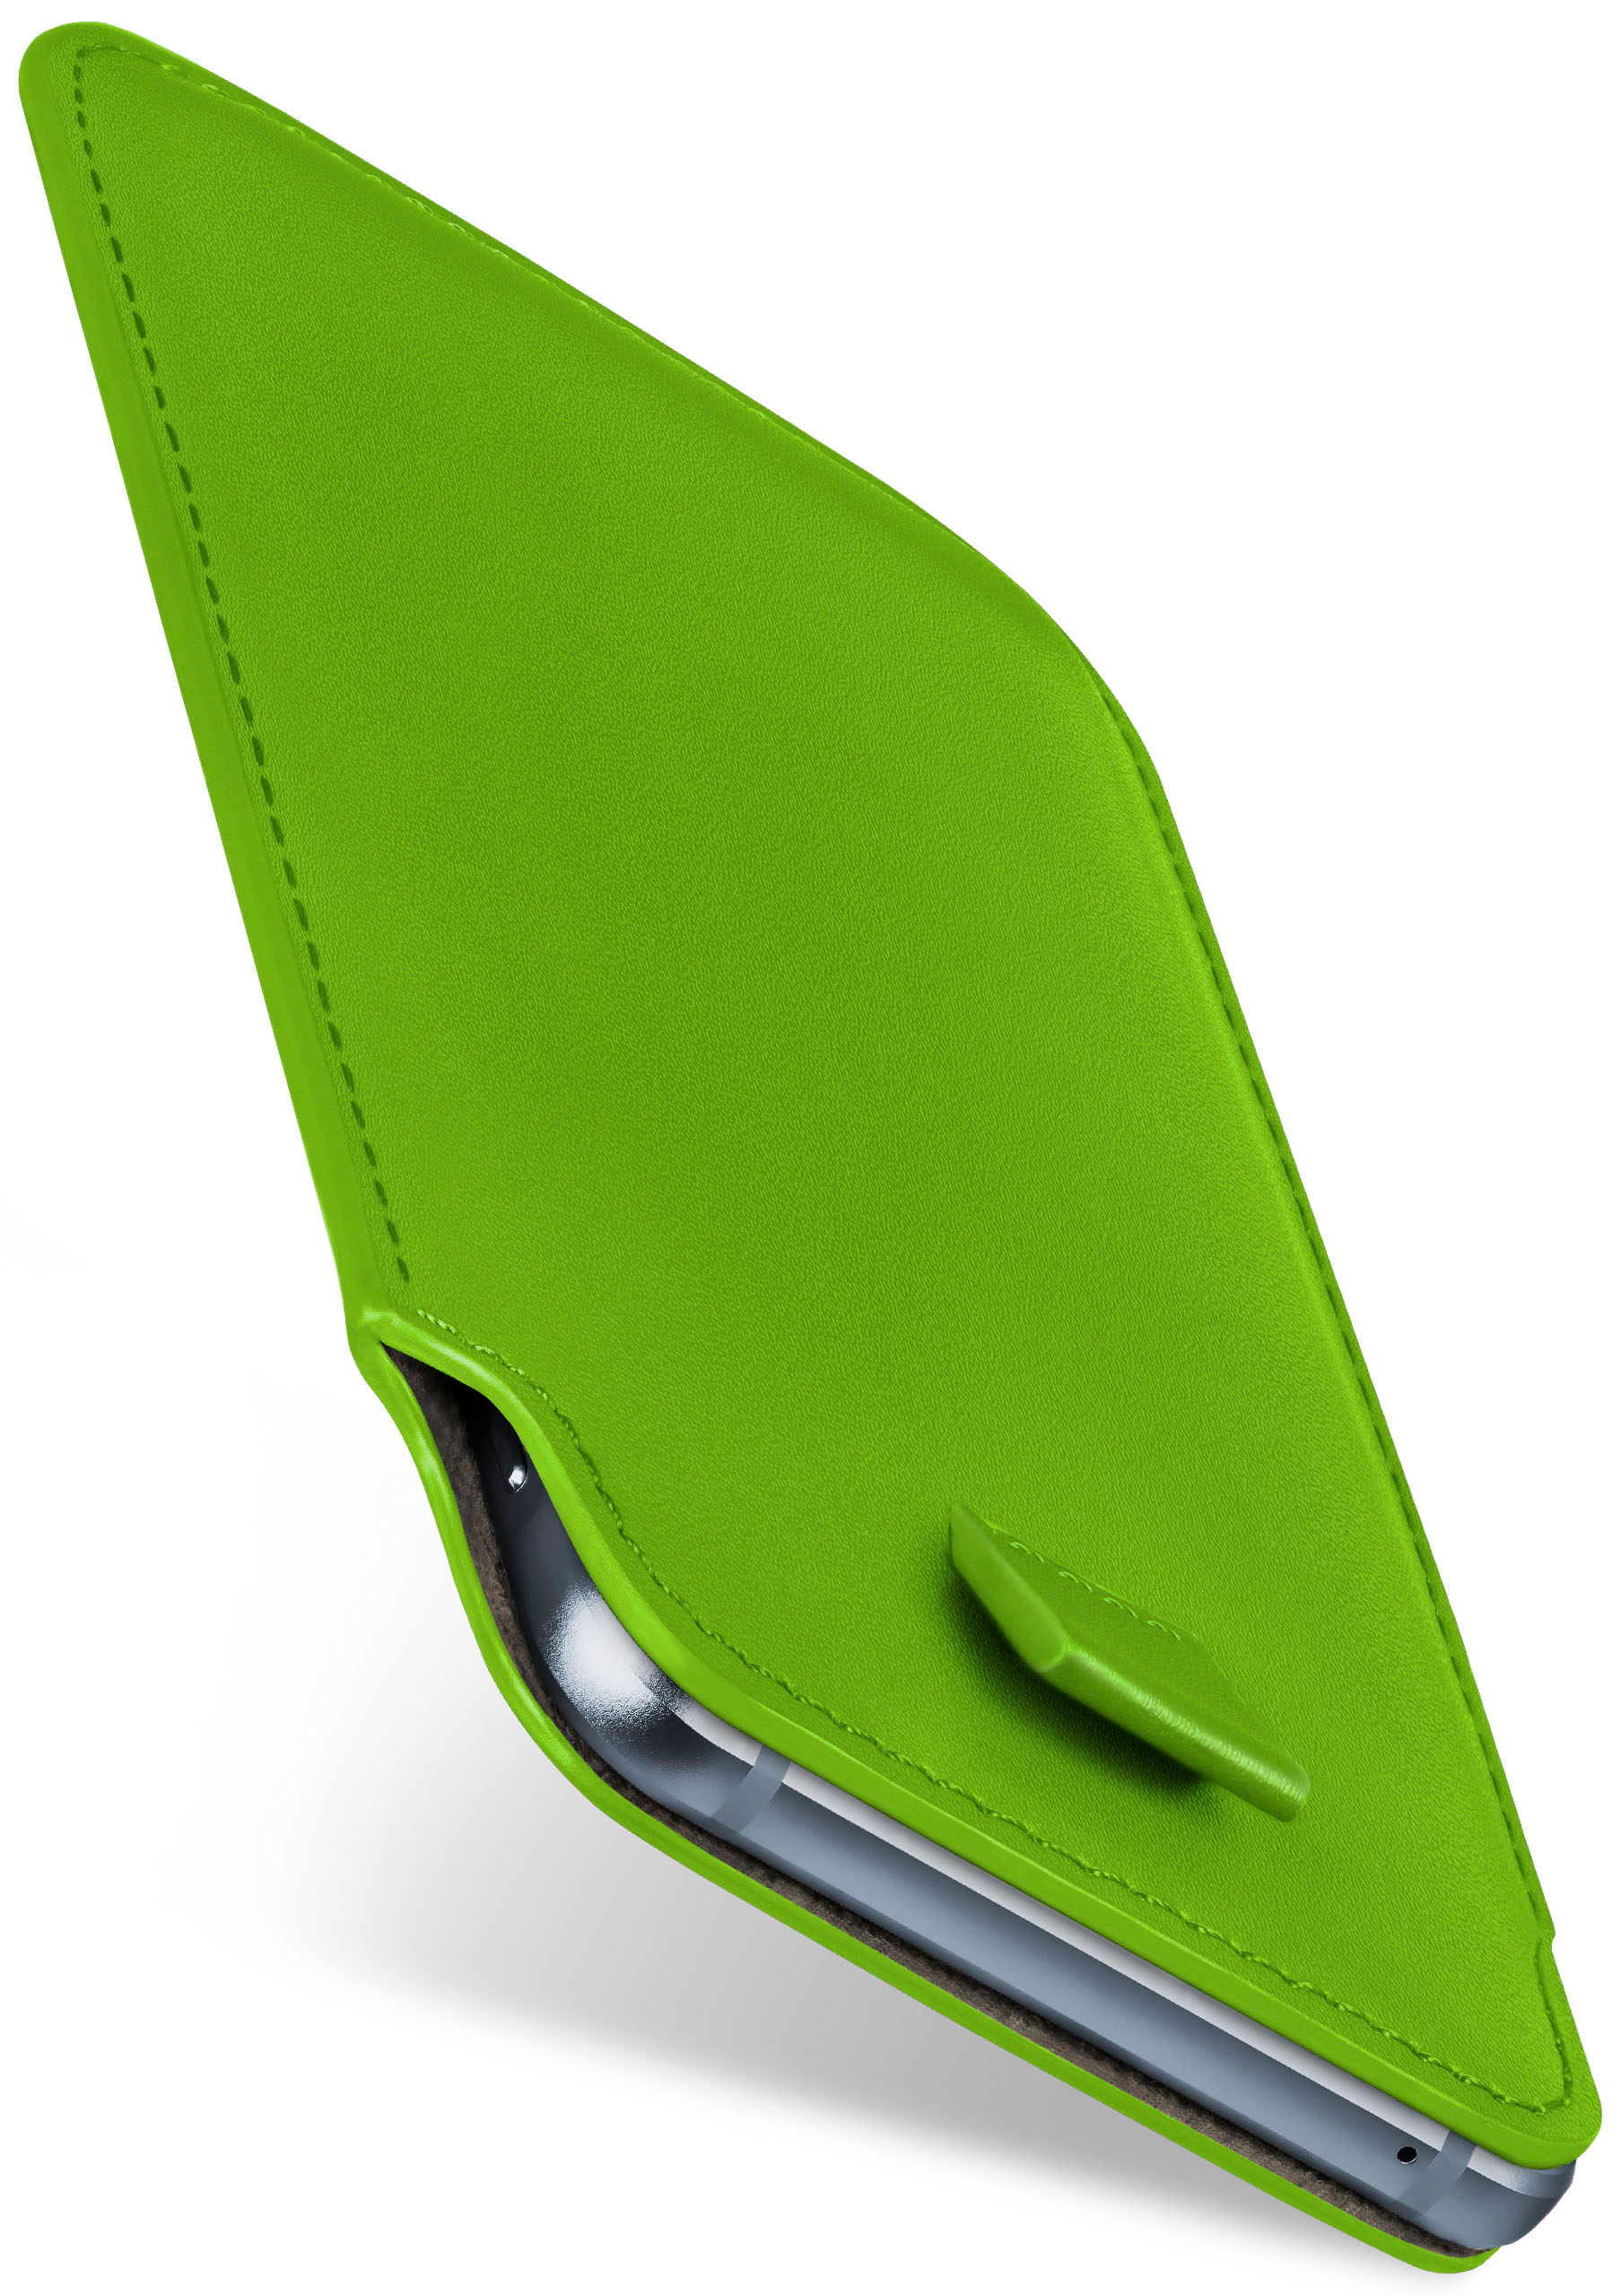 MOEX 4G, Lime-Green Cover, Full Slide 8110 Nokia, Case,